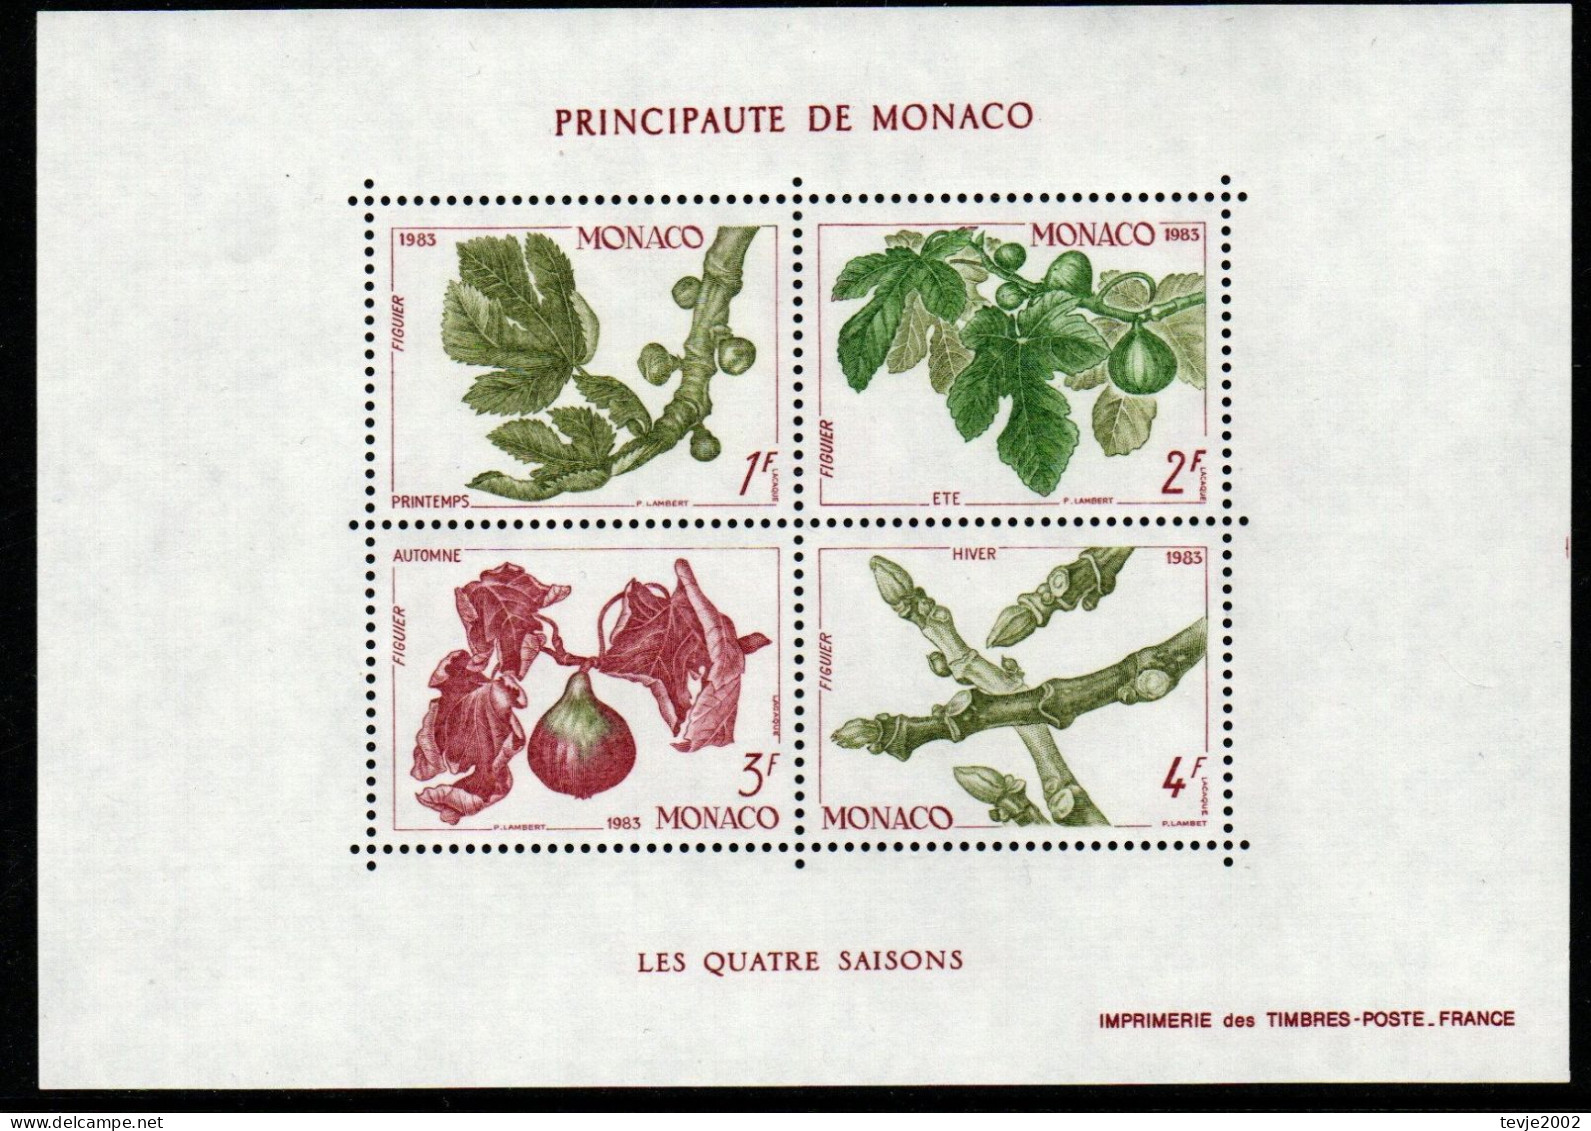 Monaco 1983 - Mi.Nr. Block 24 - Postfrisch MNH - Bäume Trees Feigen Früchte Fruits - Bomen